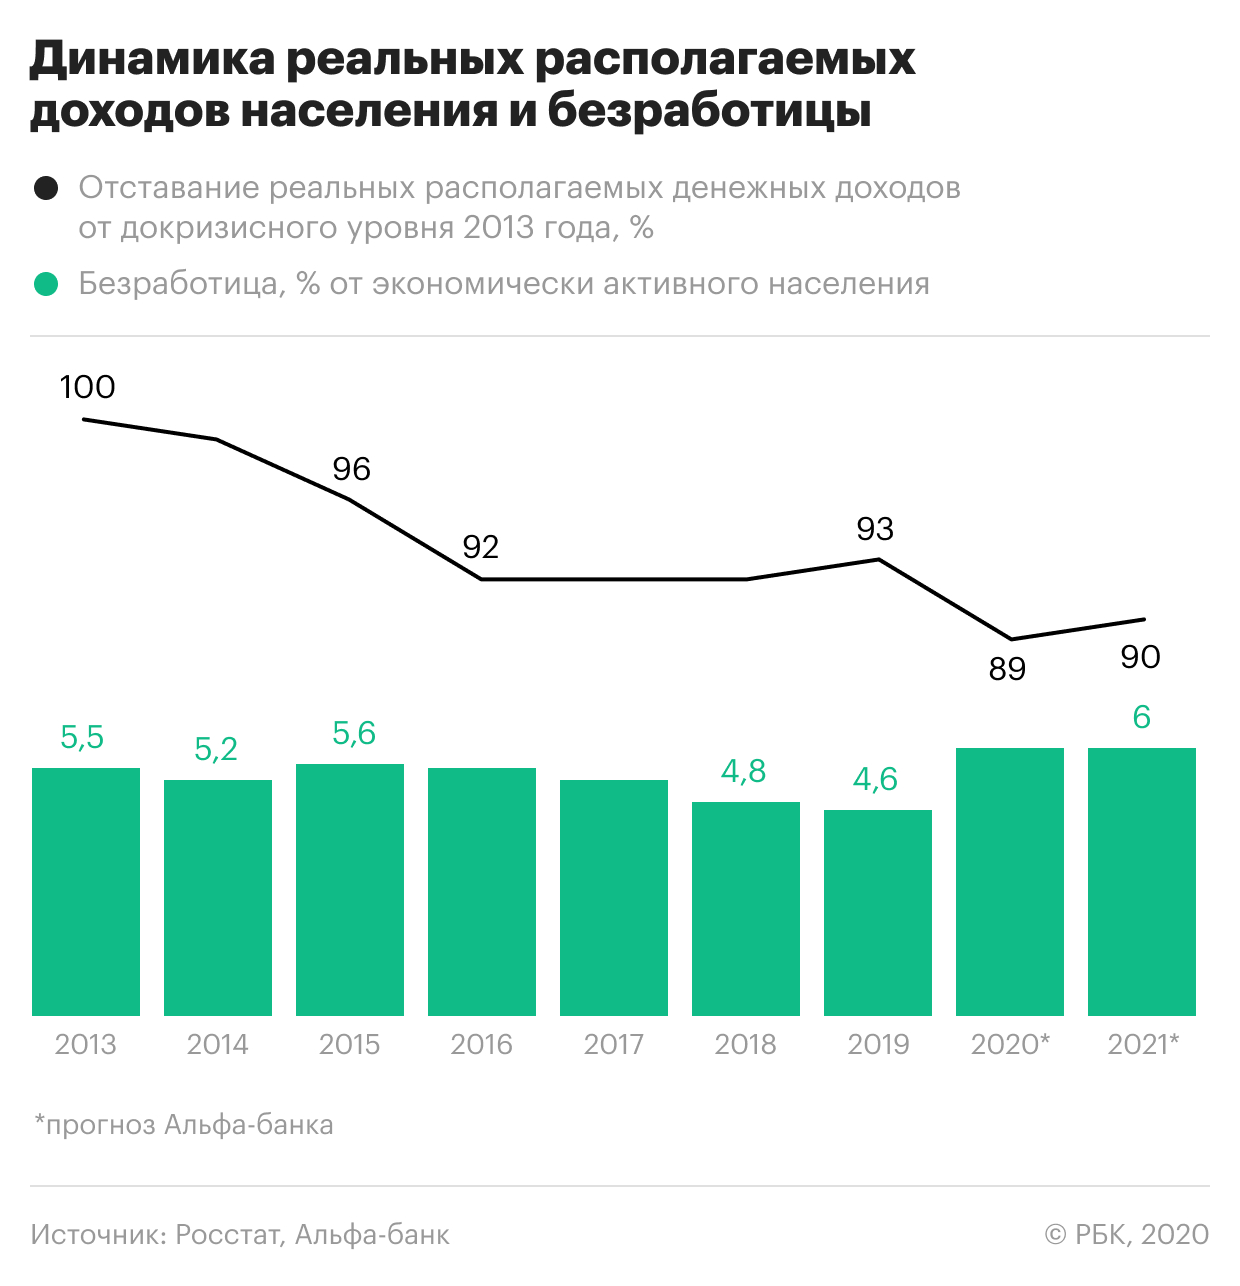 Экономисты оценили потенциал восстановления реальных доходов россиян